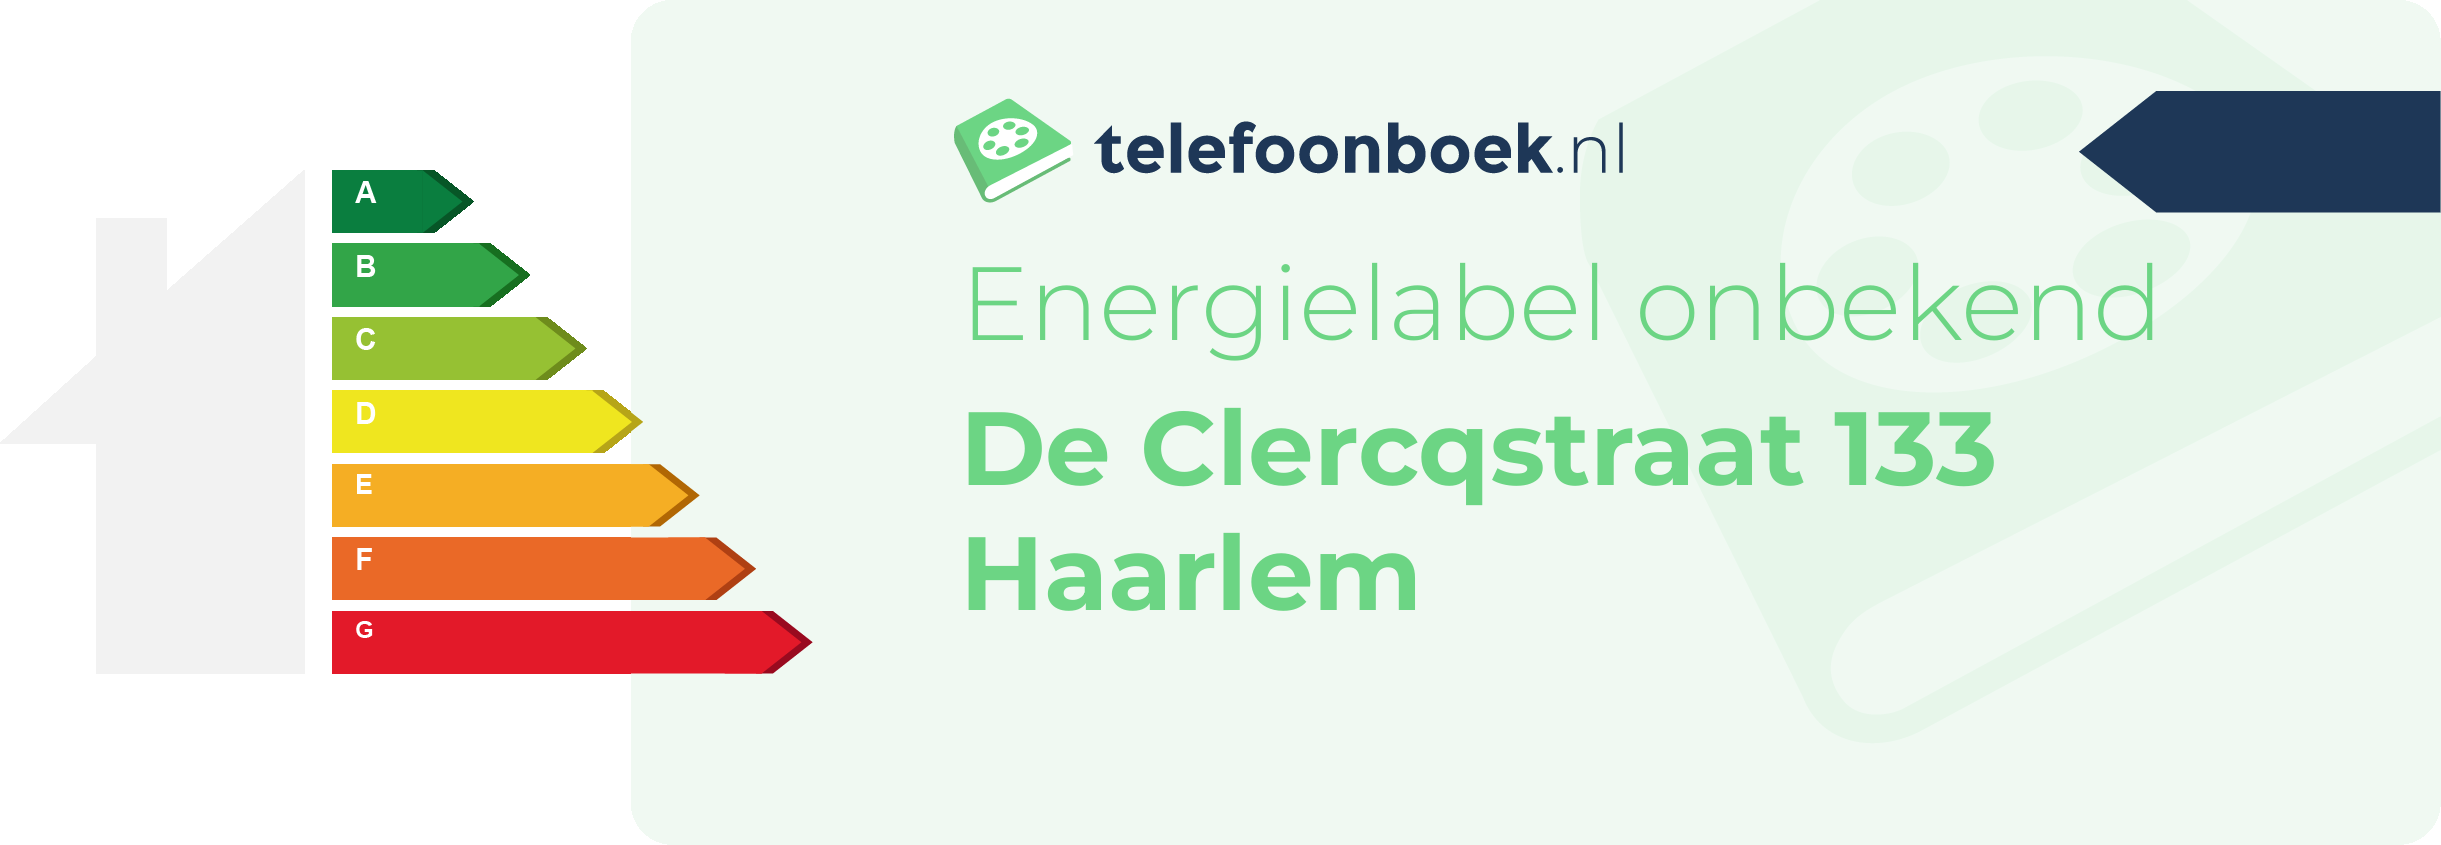 Energielabel De Clercqstraat 133 Haarlem